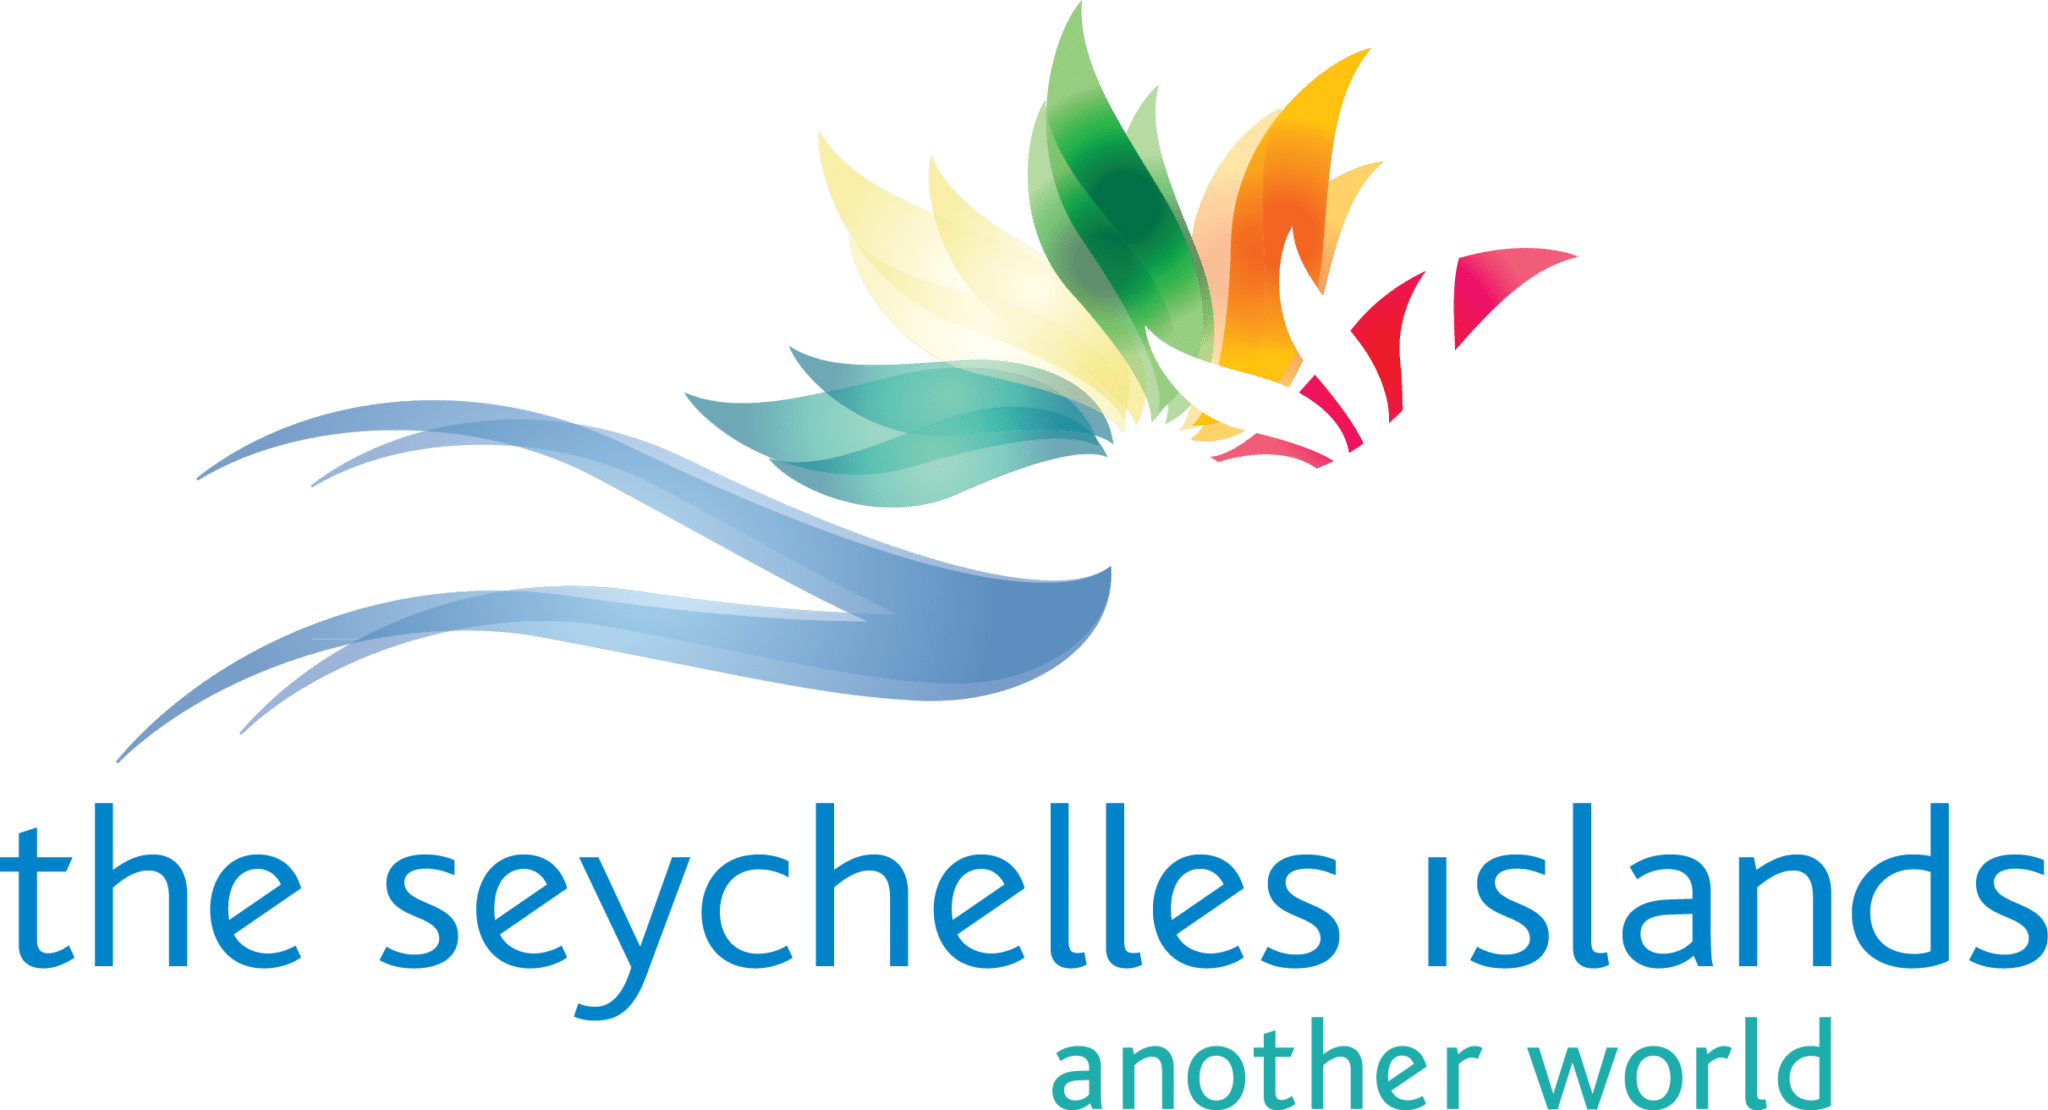 Seychelle-szigetek a paradicsom